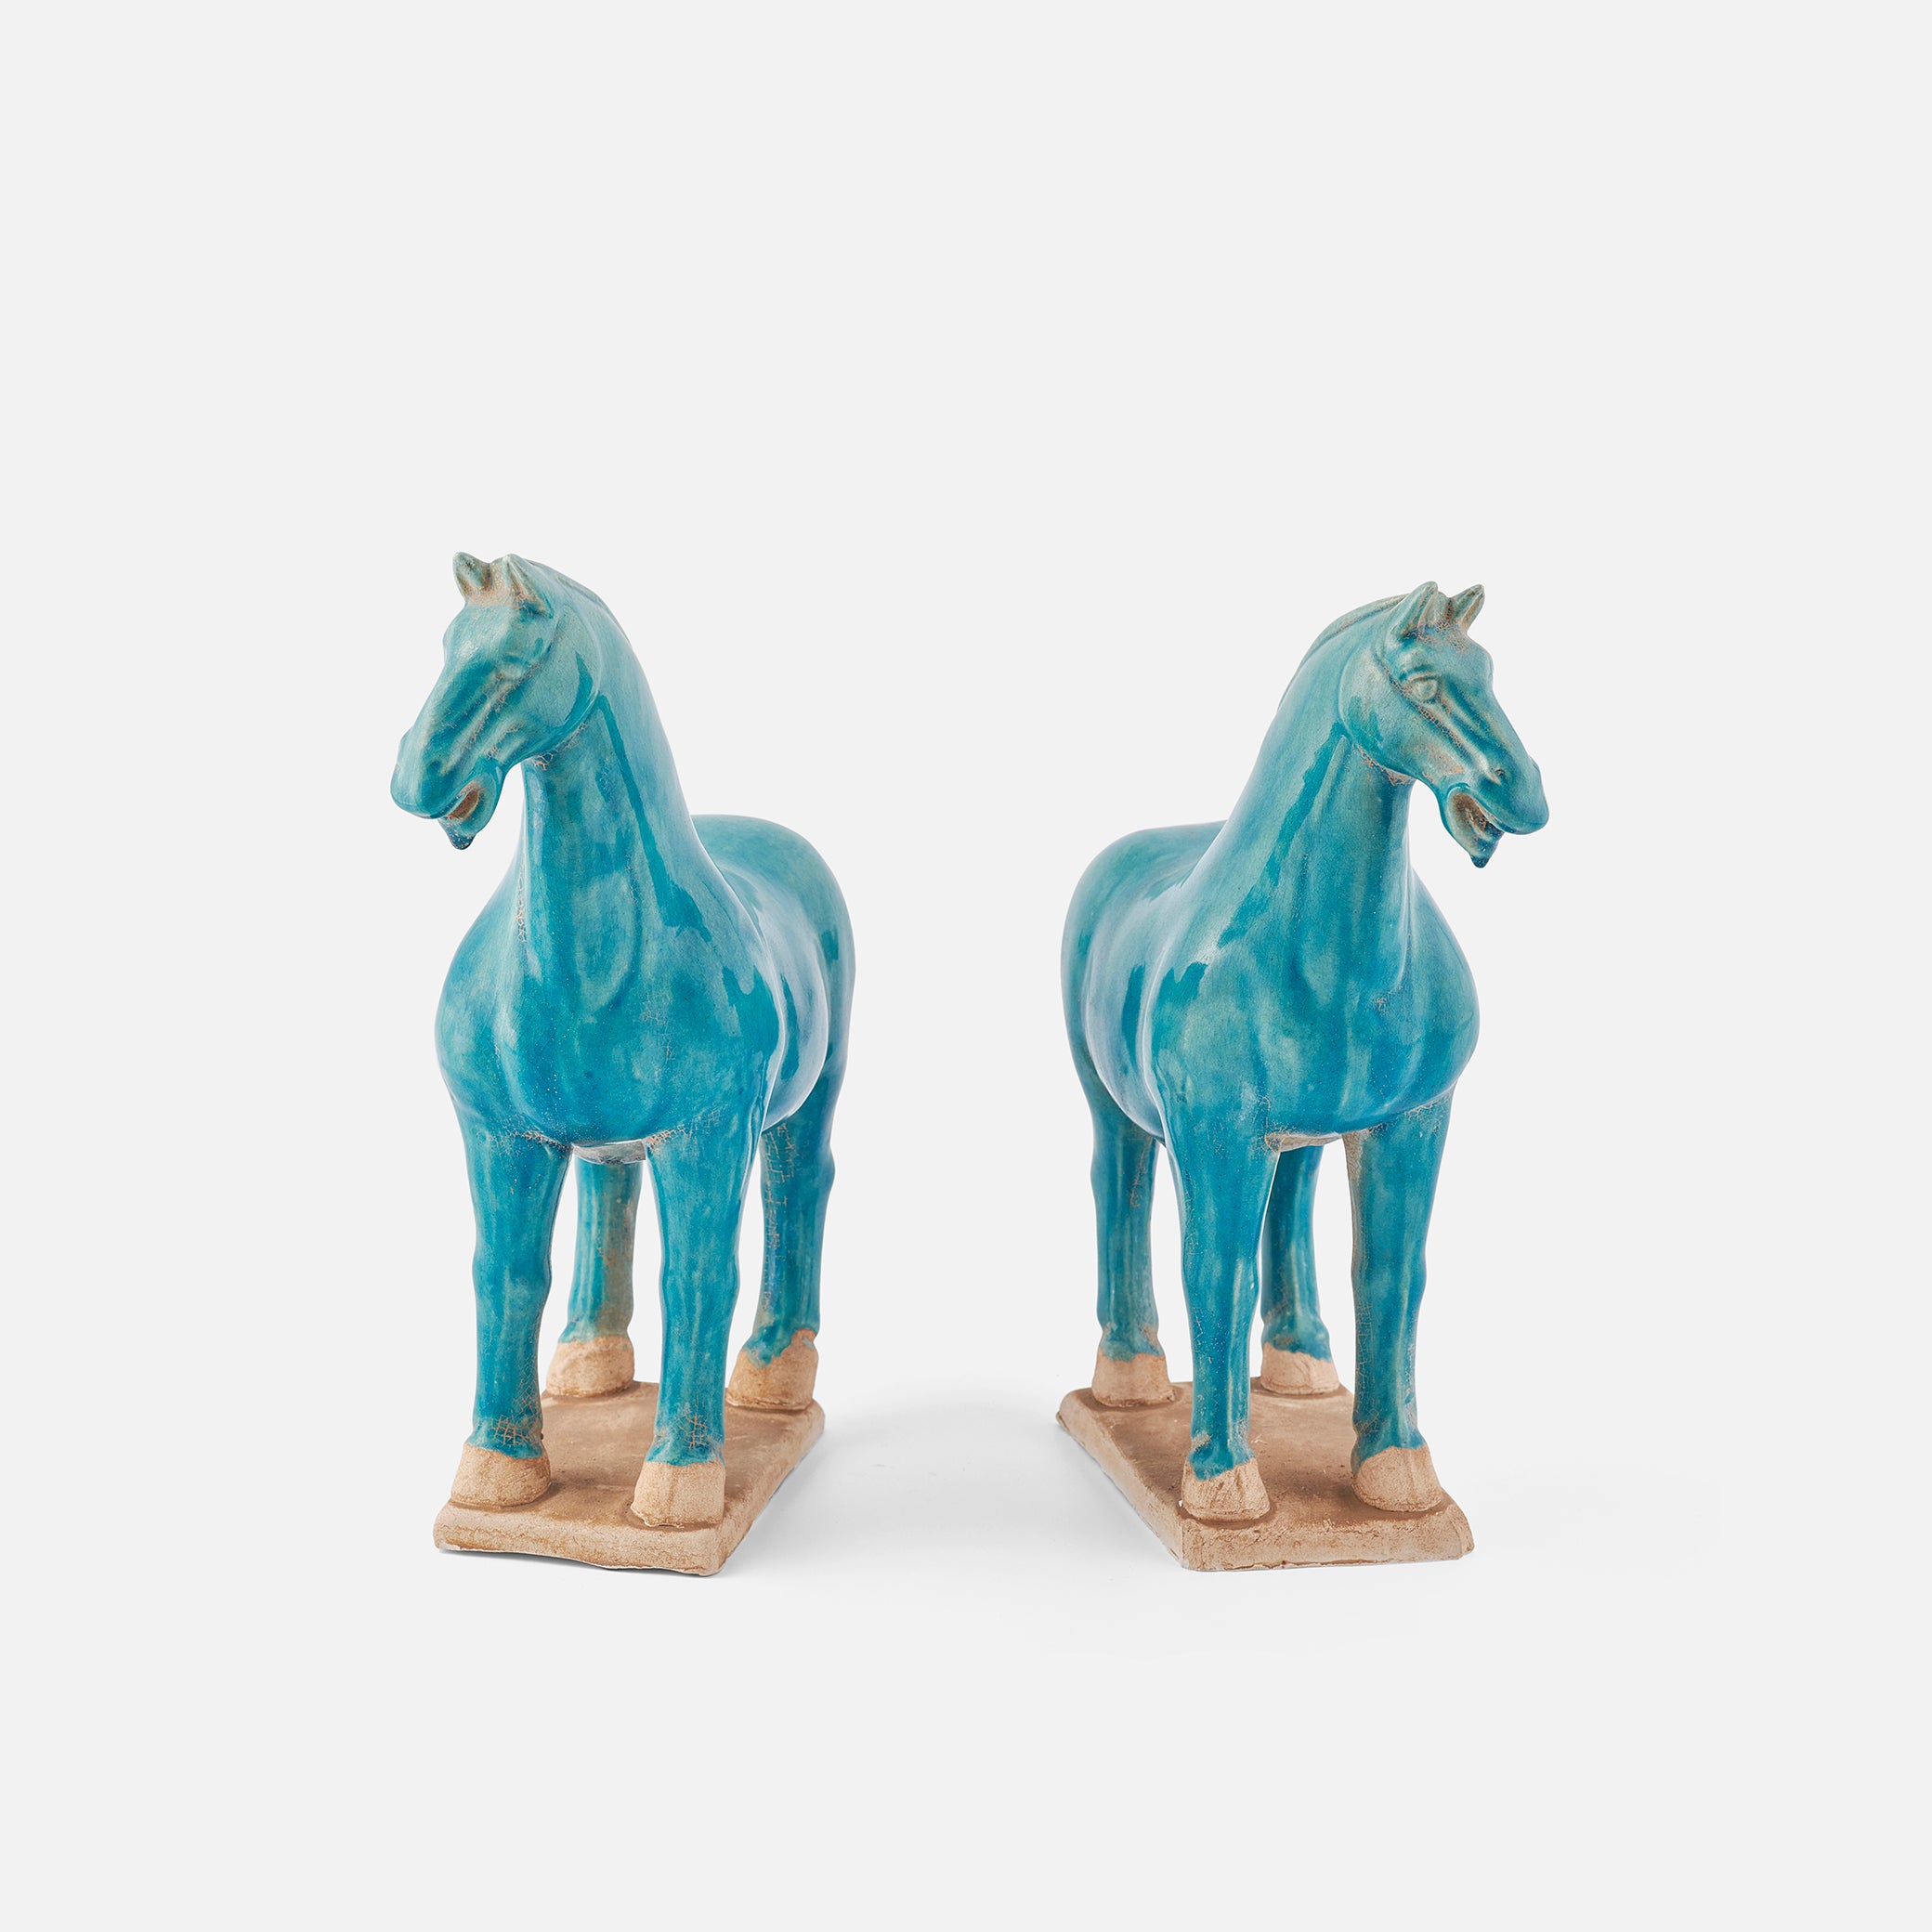 Light Blue Ceramic Horses, Pair